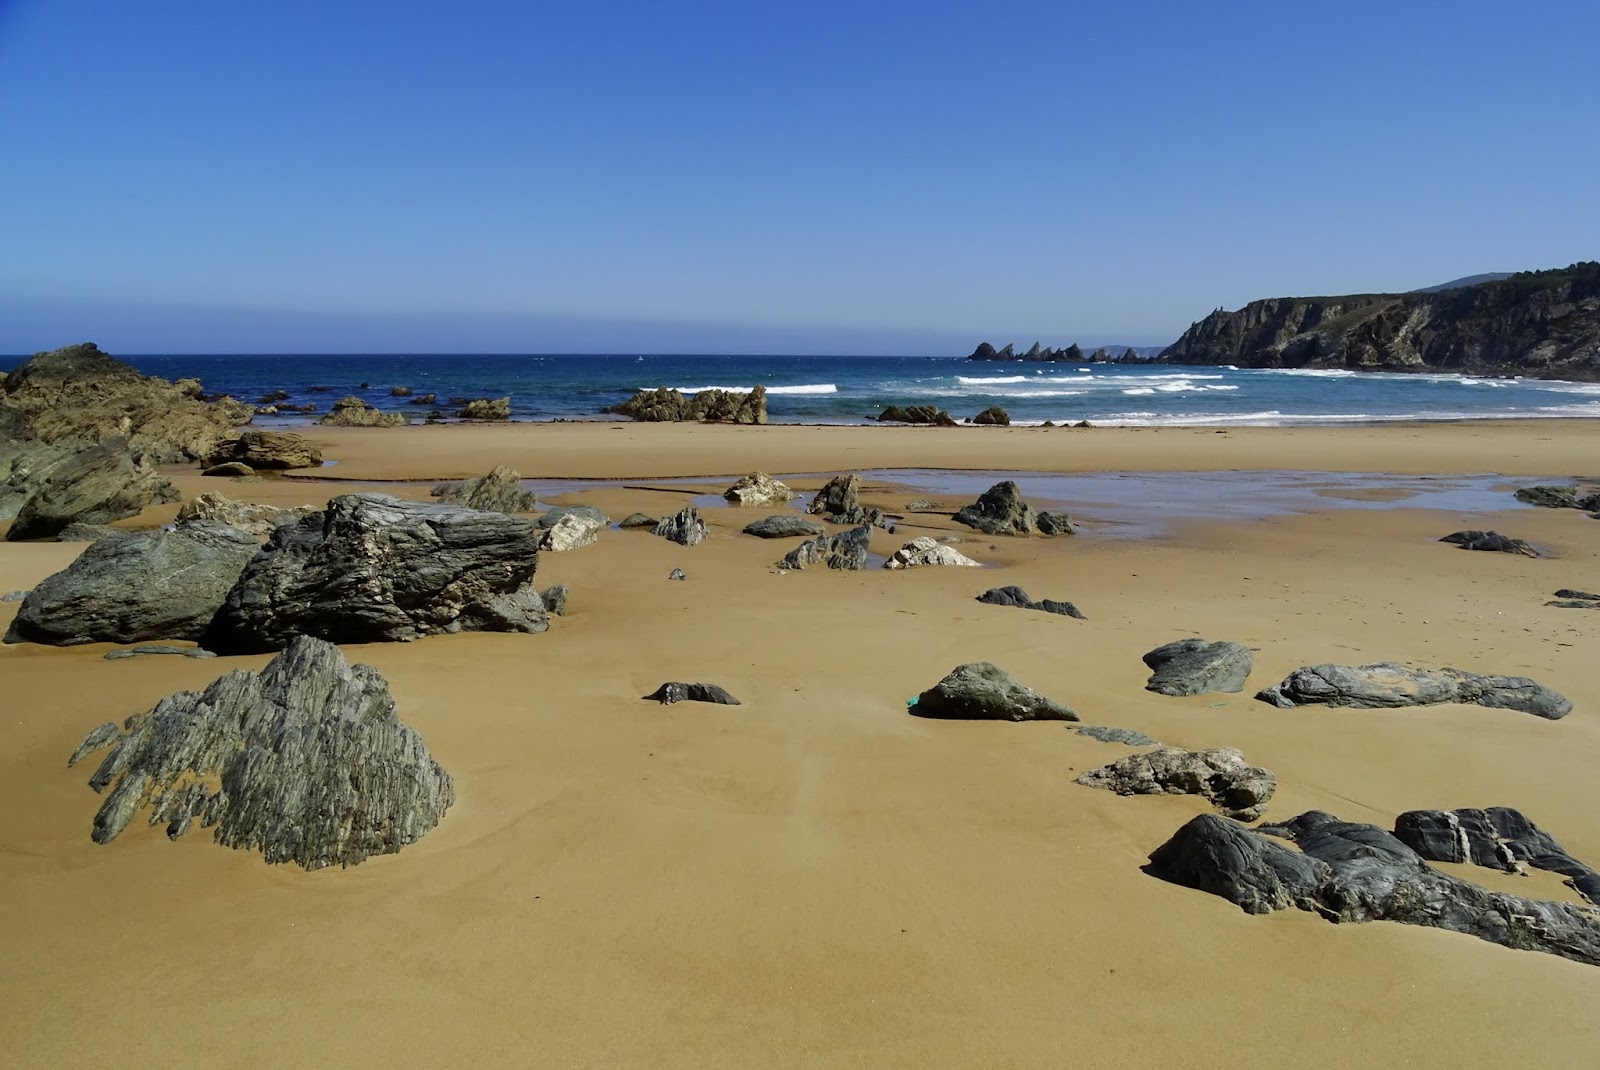 Fotografie cu Praia Fabrega cu o suprafață de nisip fin strălucitor